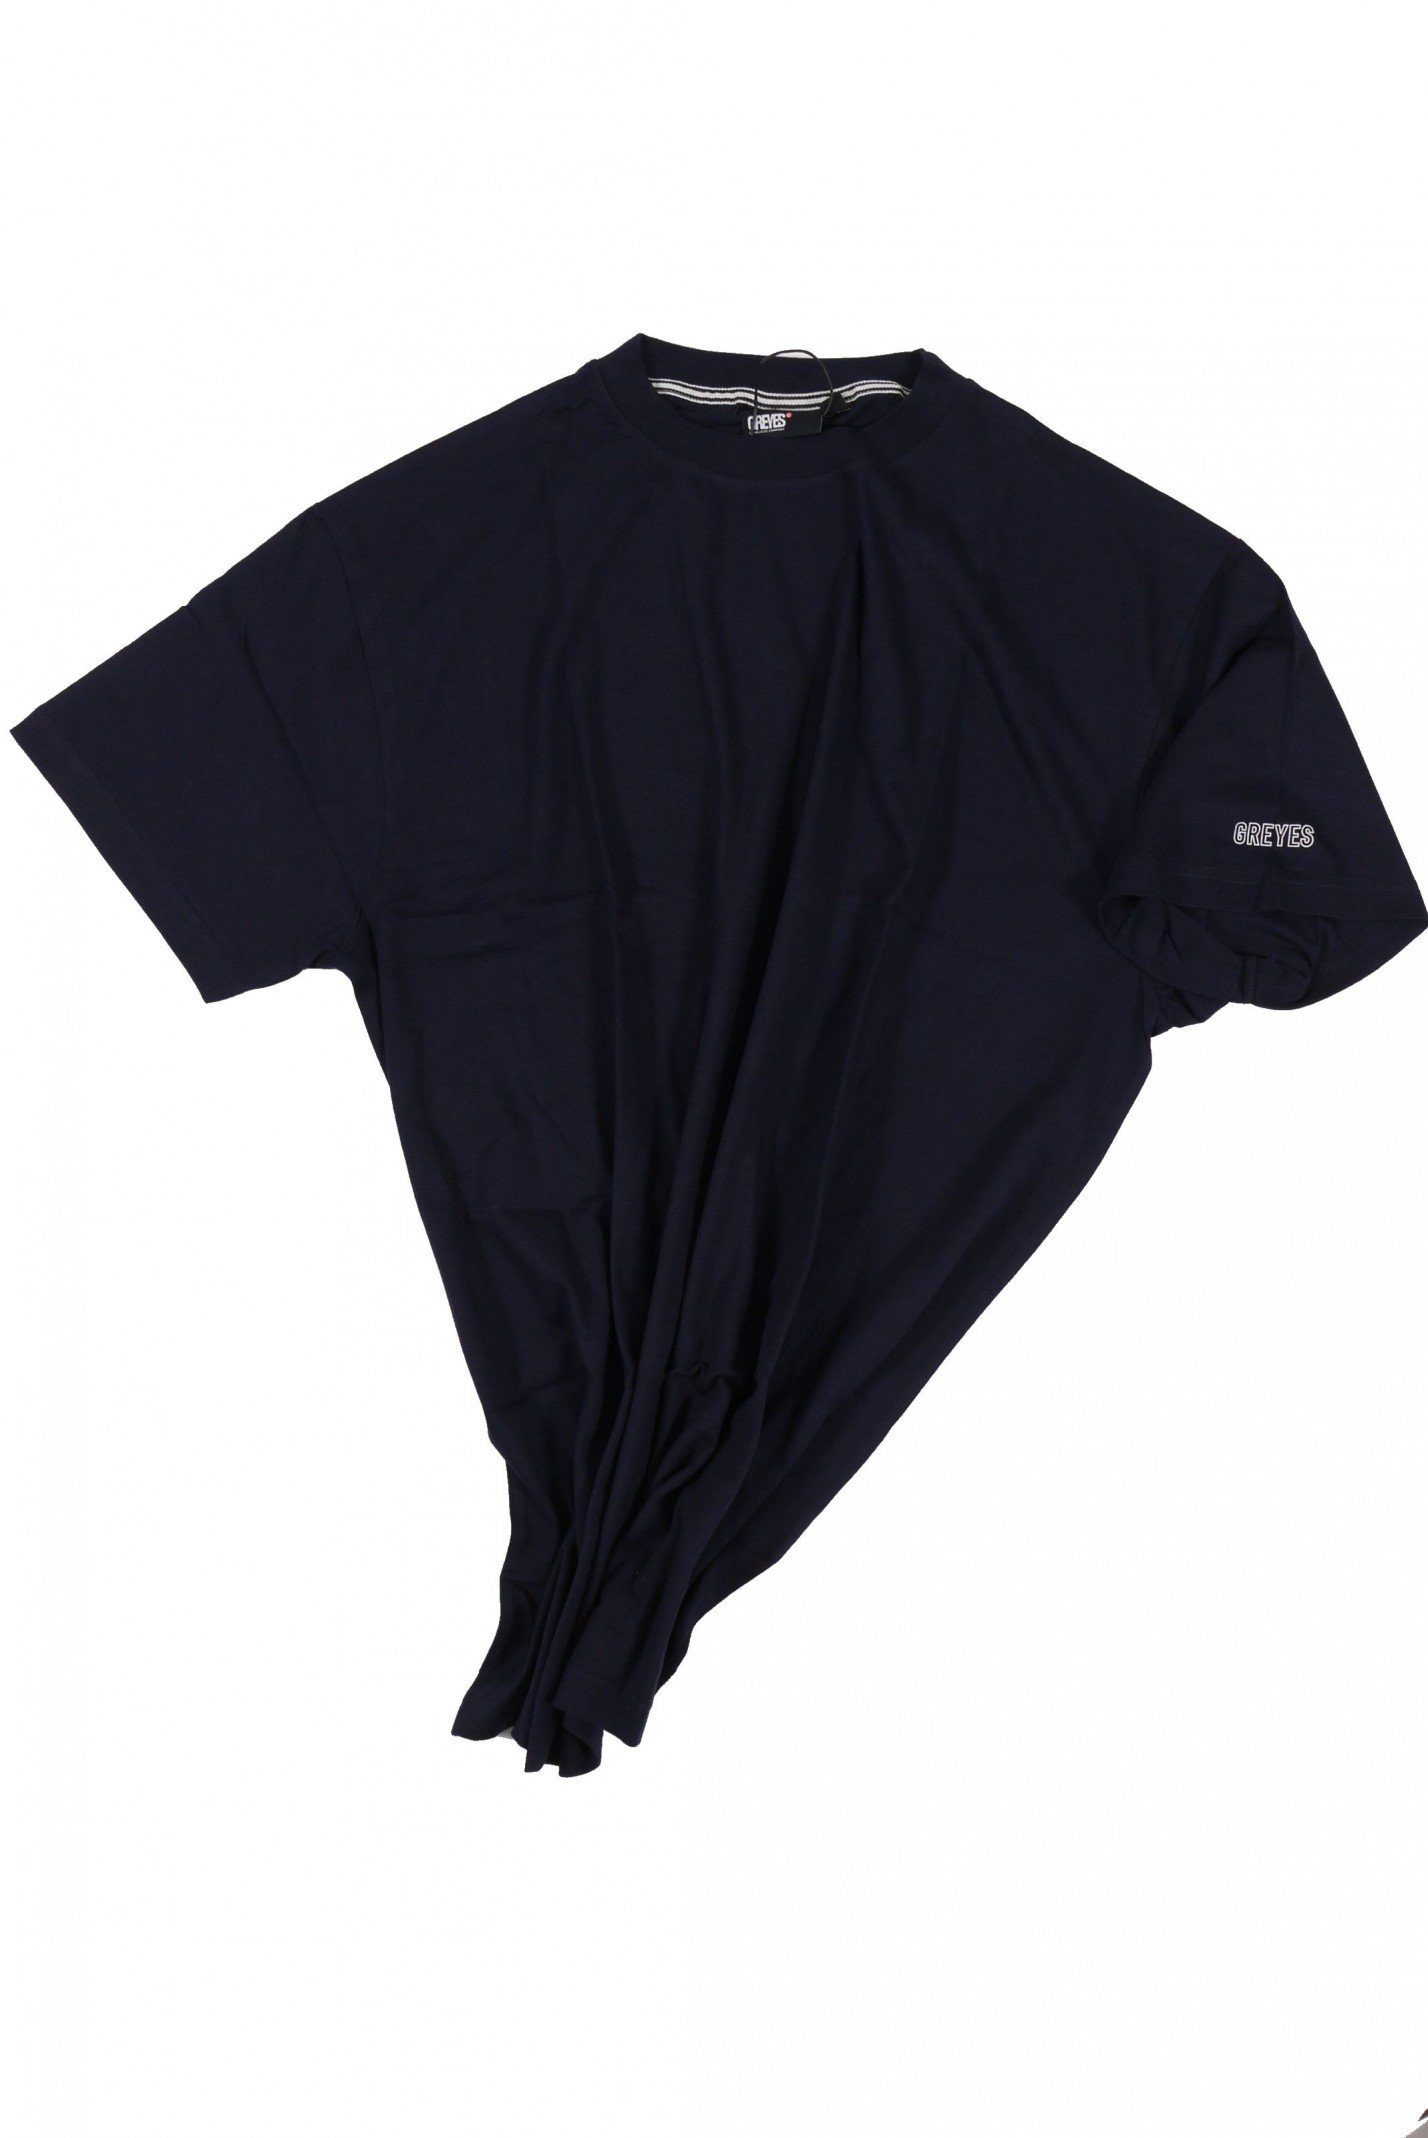 north 56 4 T-Shirt T-Shirt von Allsize in Herrenübergröße bis 8XL, dunkelblau | T-Shirts